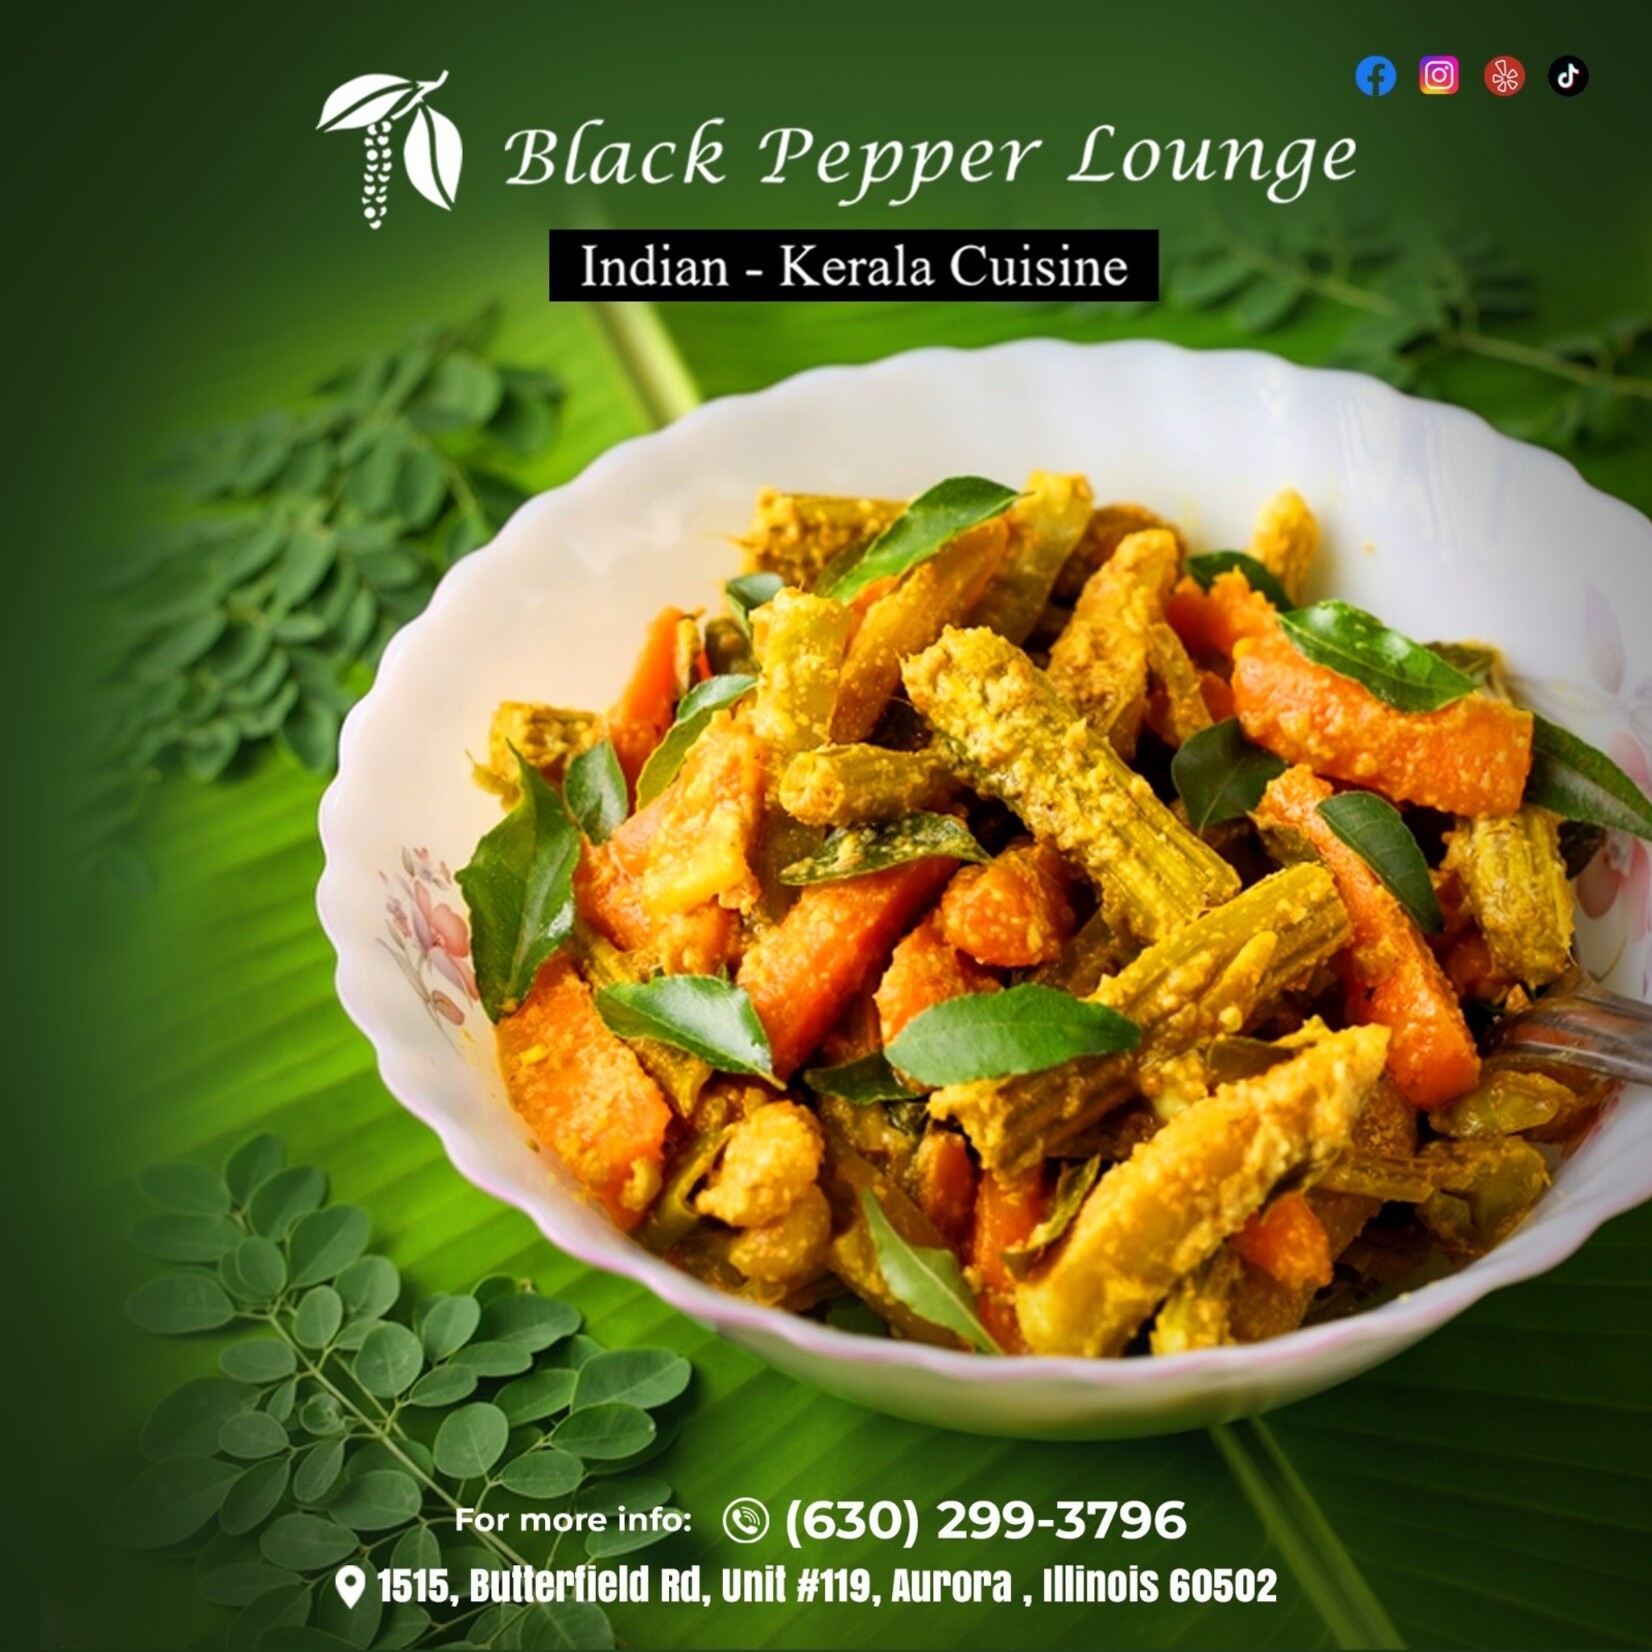 Black Pepper Lounge-Aurora Black Pepper Lounge-Aurora $20 Dining Certificate